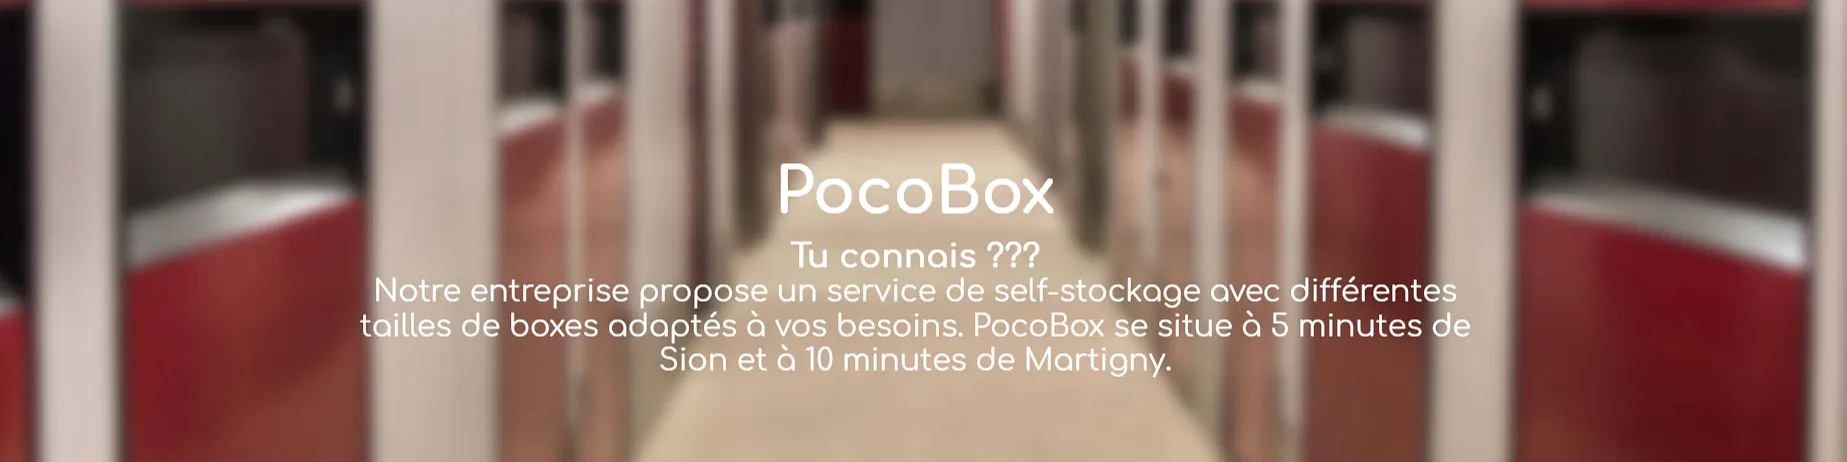 PocoBox